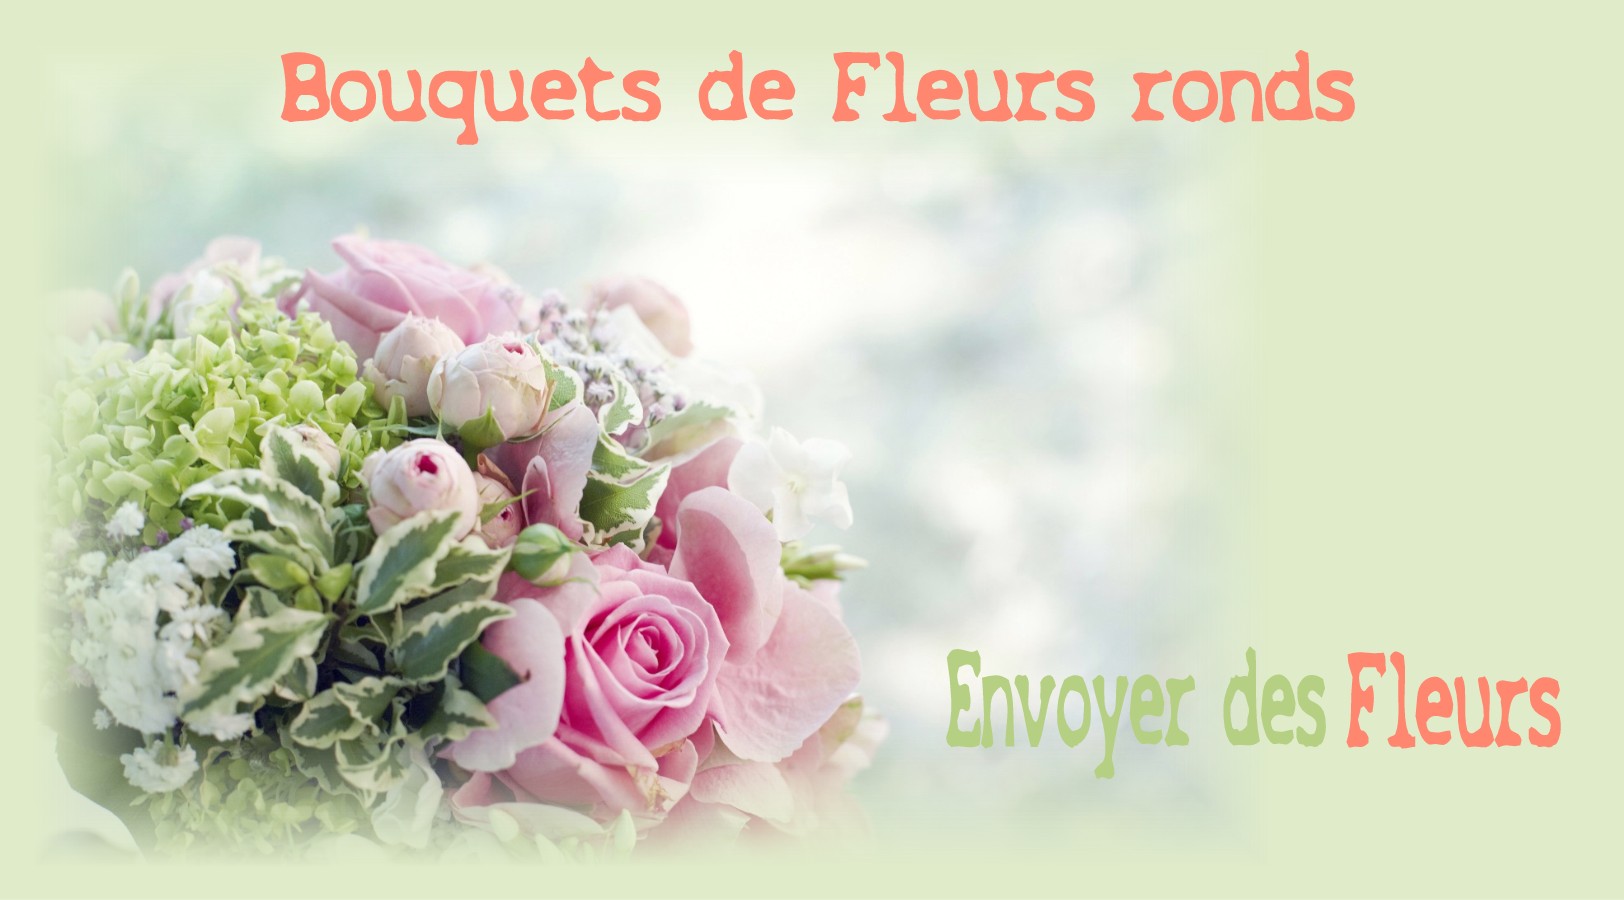 LES BOUQUETS RONDS - FLEURISTE des ALPES MARITIMES - ENVOYER DES FLEURS